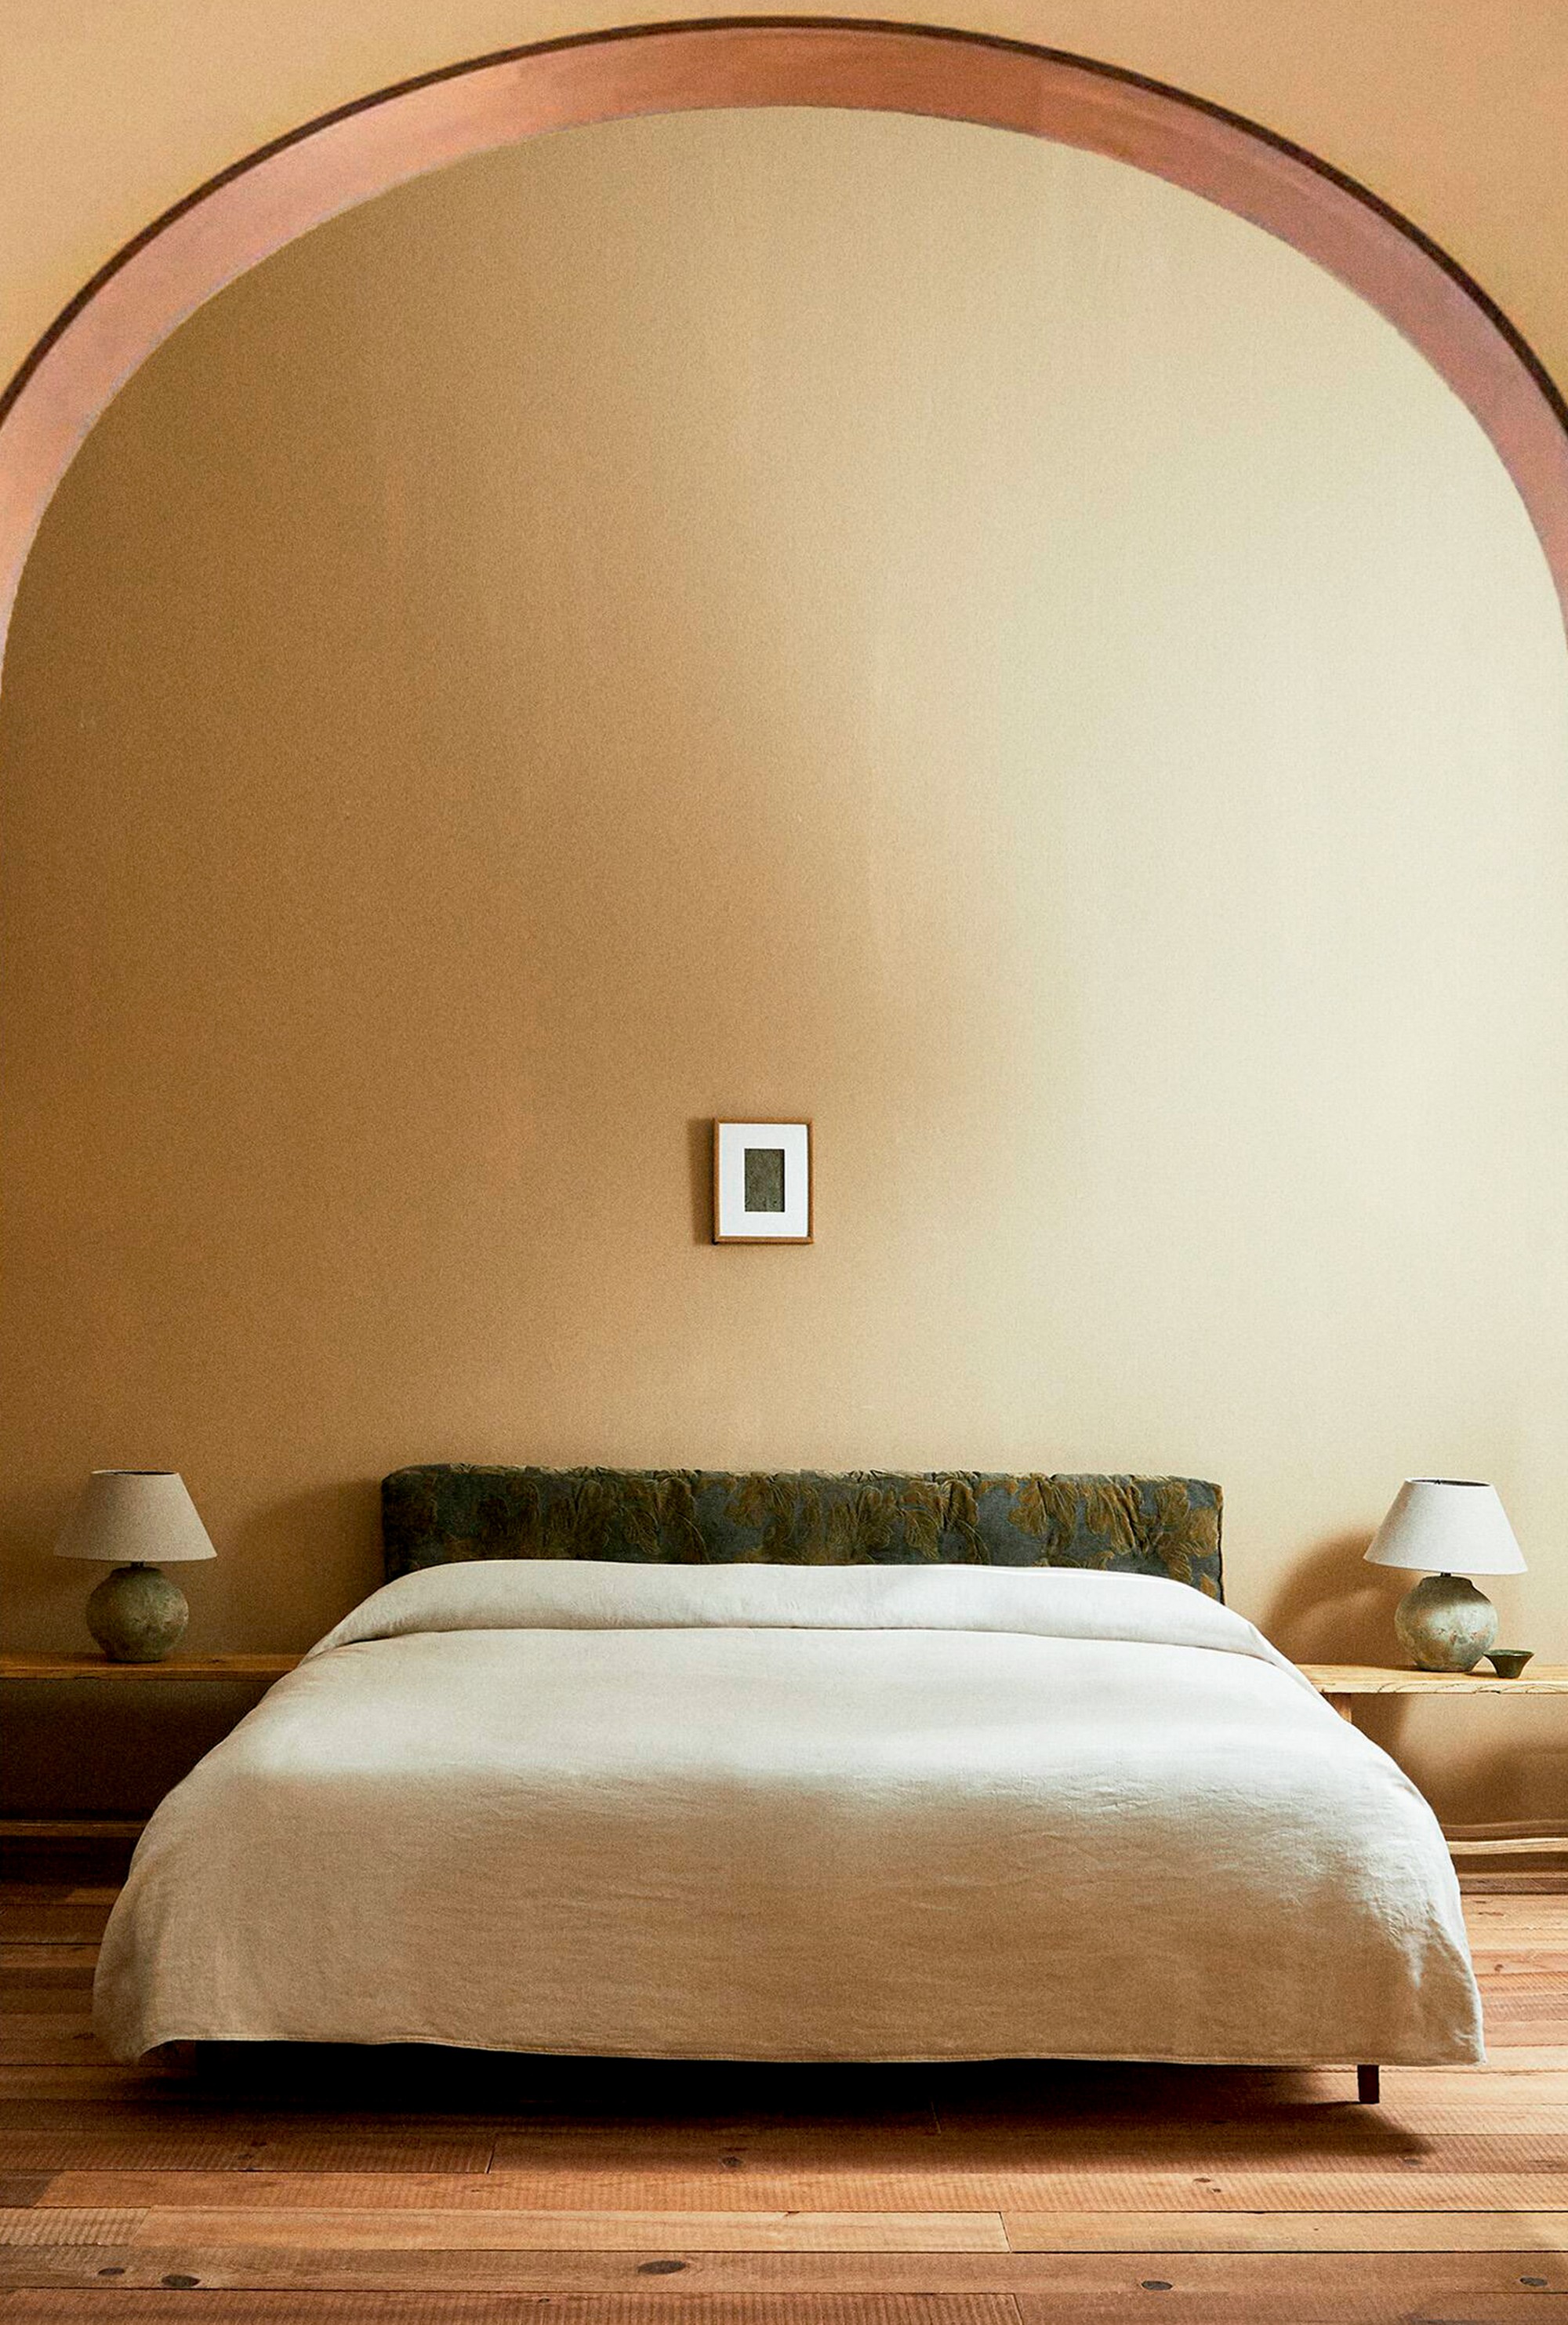 Já que é pra deitar: Duvet linho lavado Zara Home R$ 599,90 (Foto: divulgação)